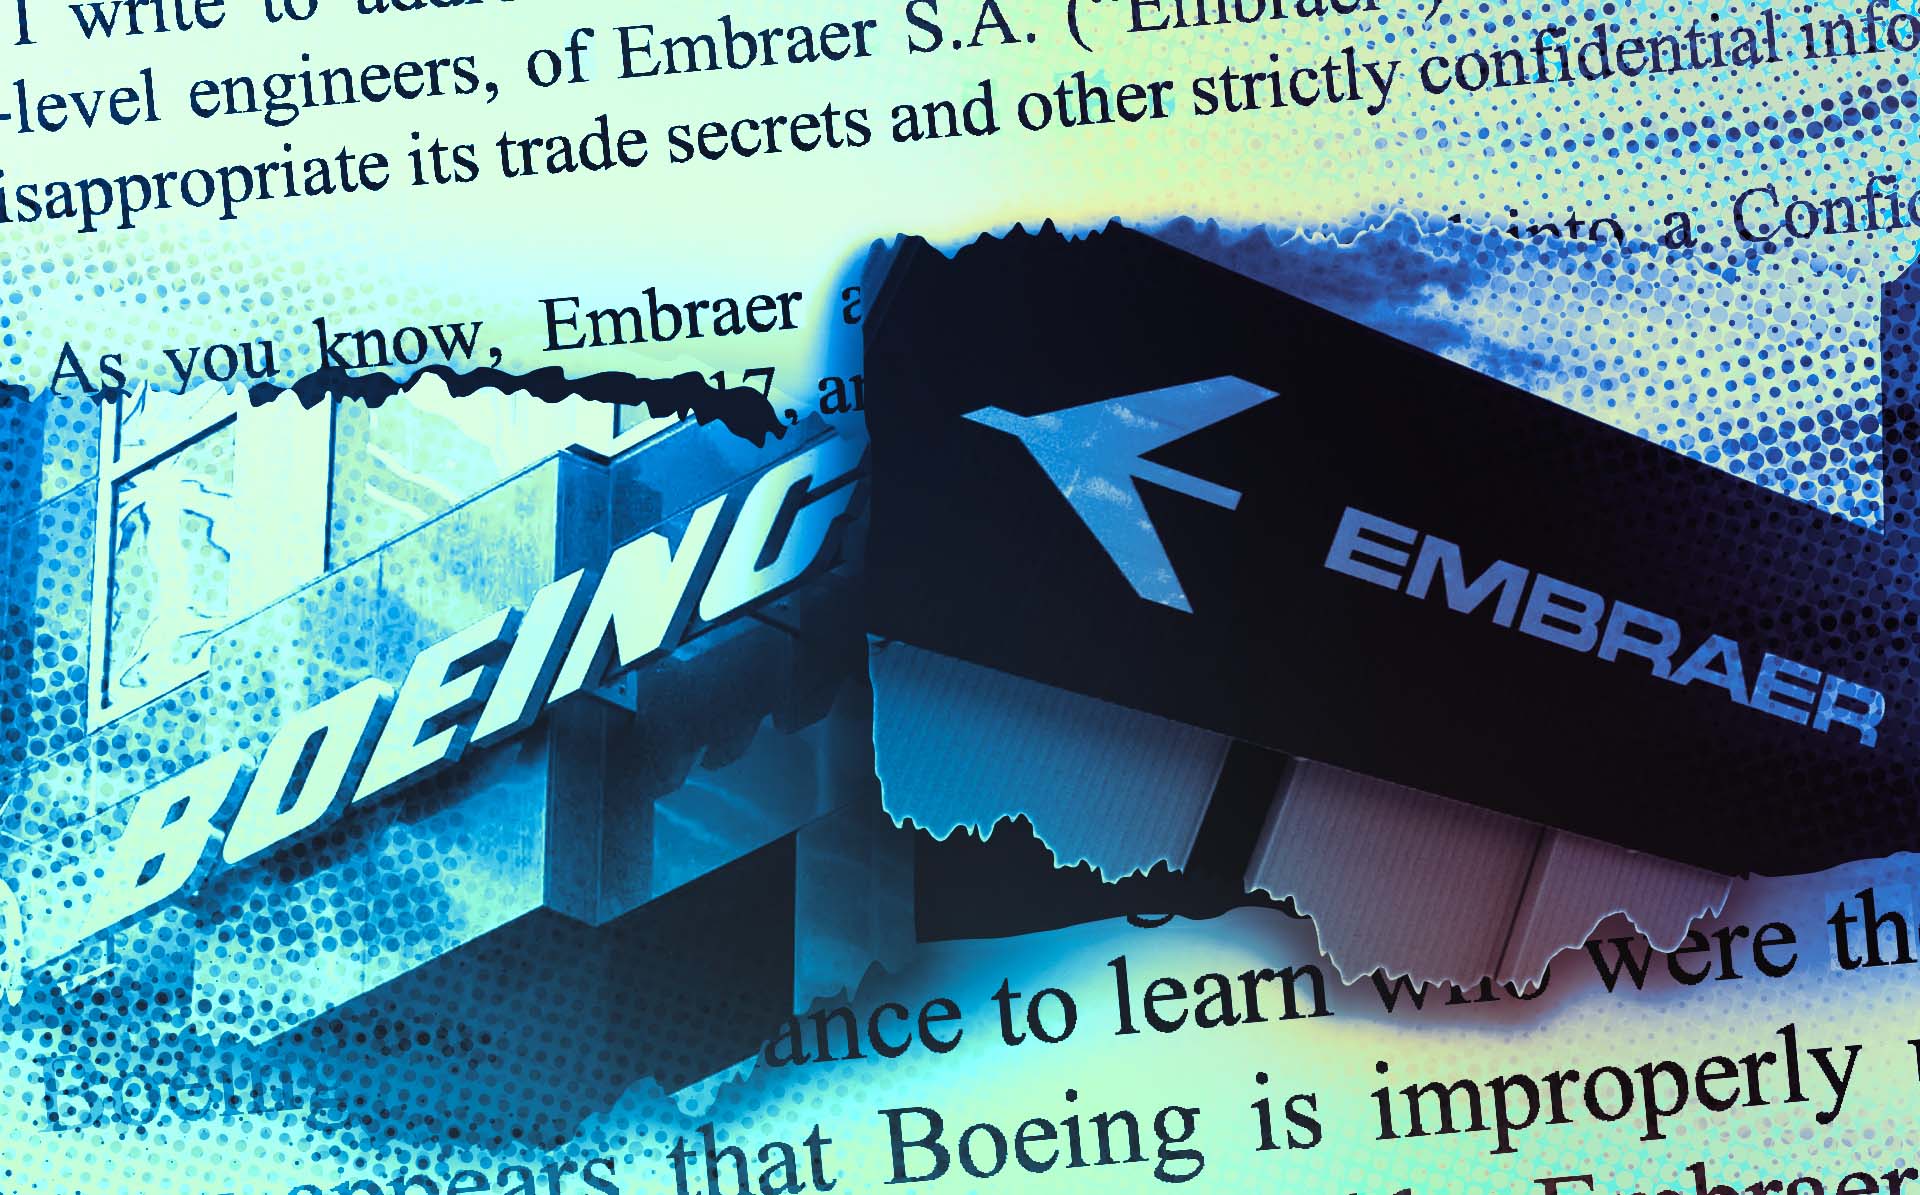 Embraer notificou extrajudicialmente a Boeing há quase 1 ano, nos Estados Unidos, por contratar engenheiros no Brasil (Leo Albertino/InfoMoney)